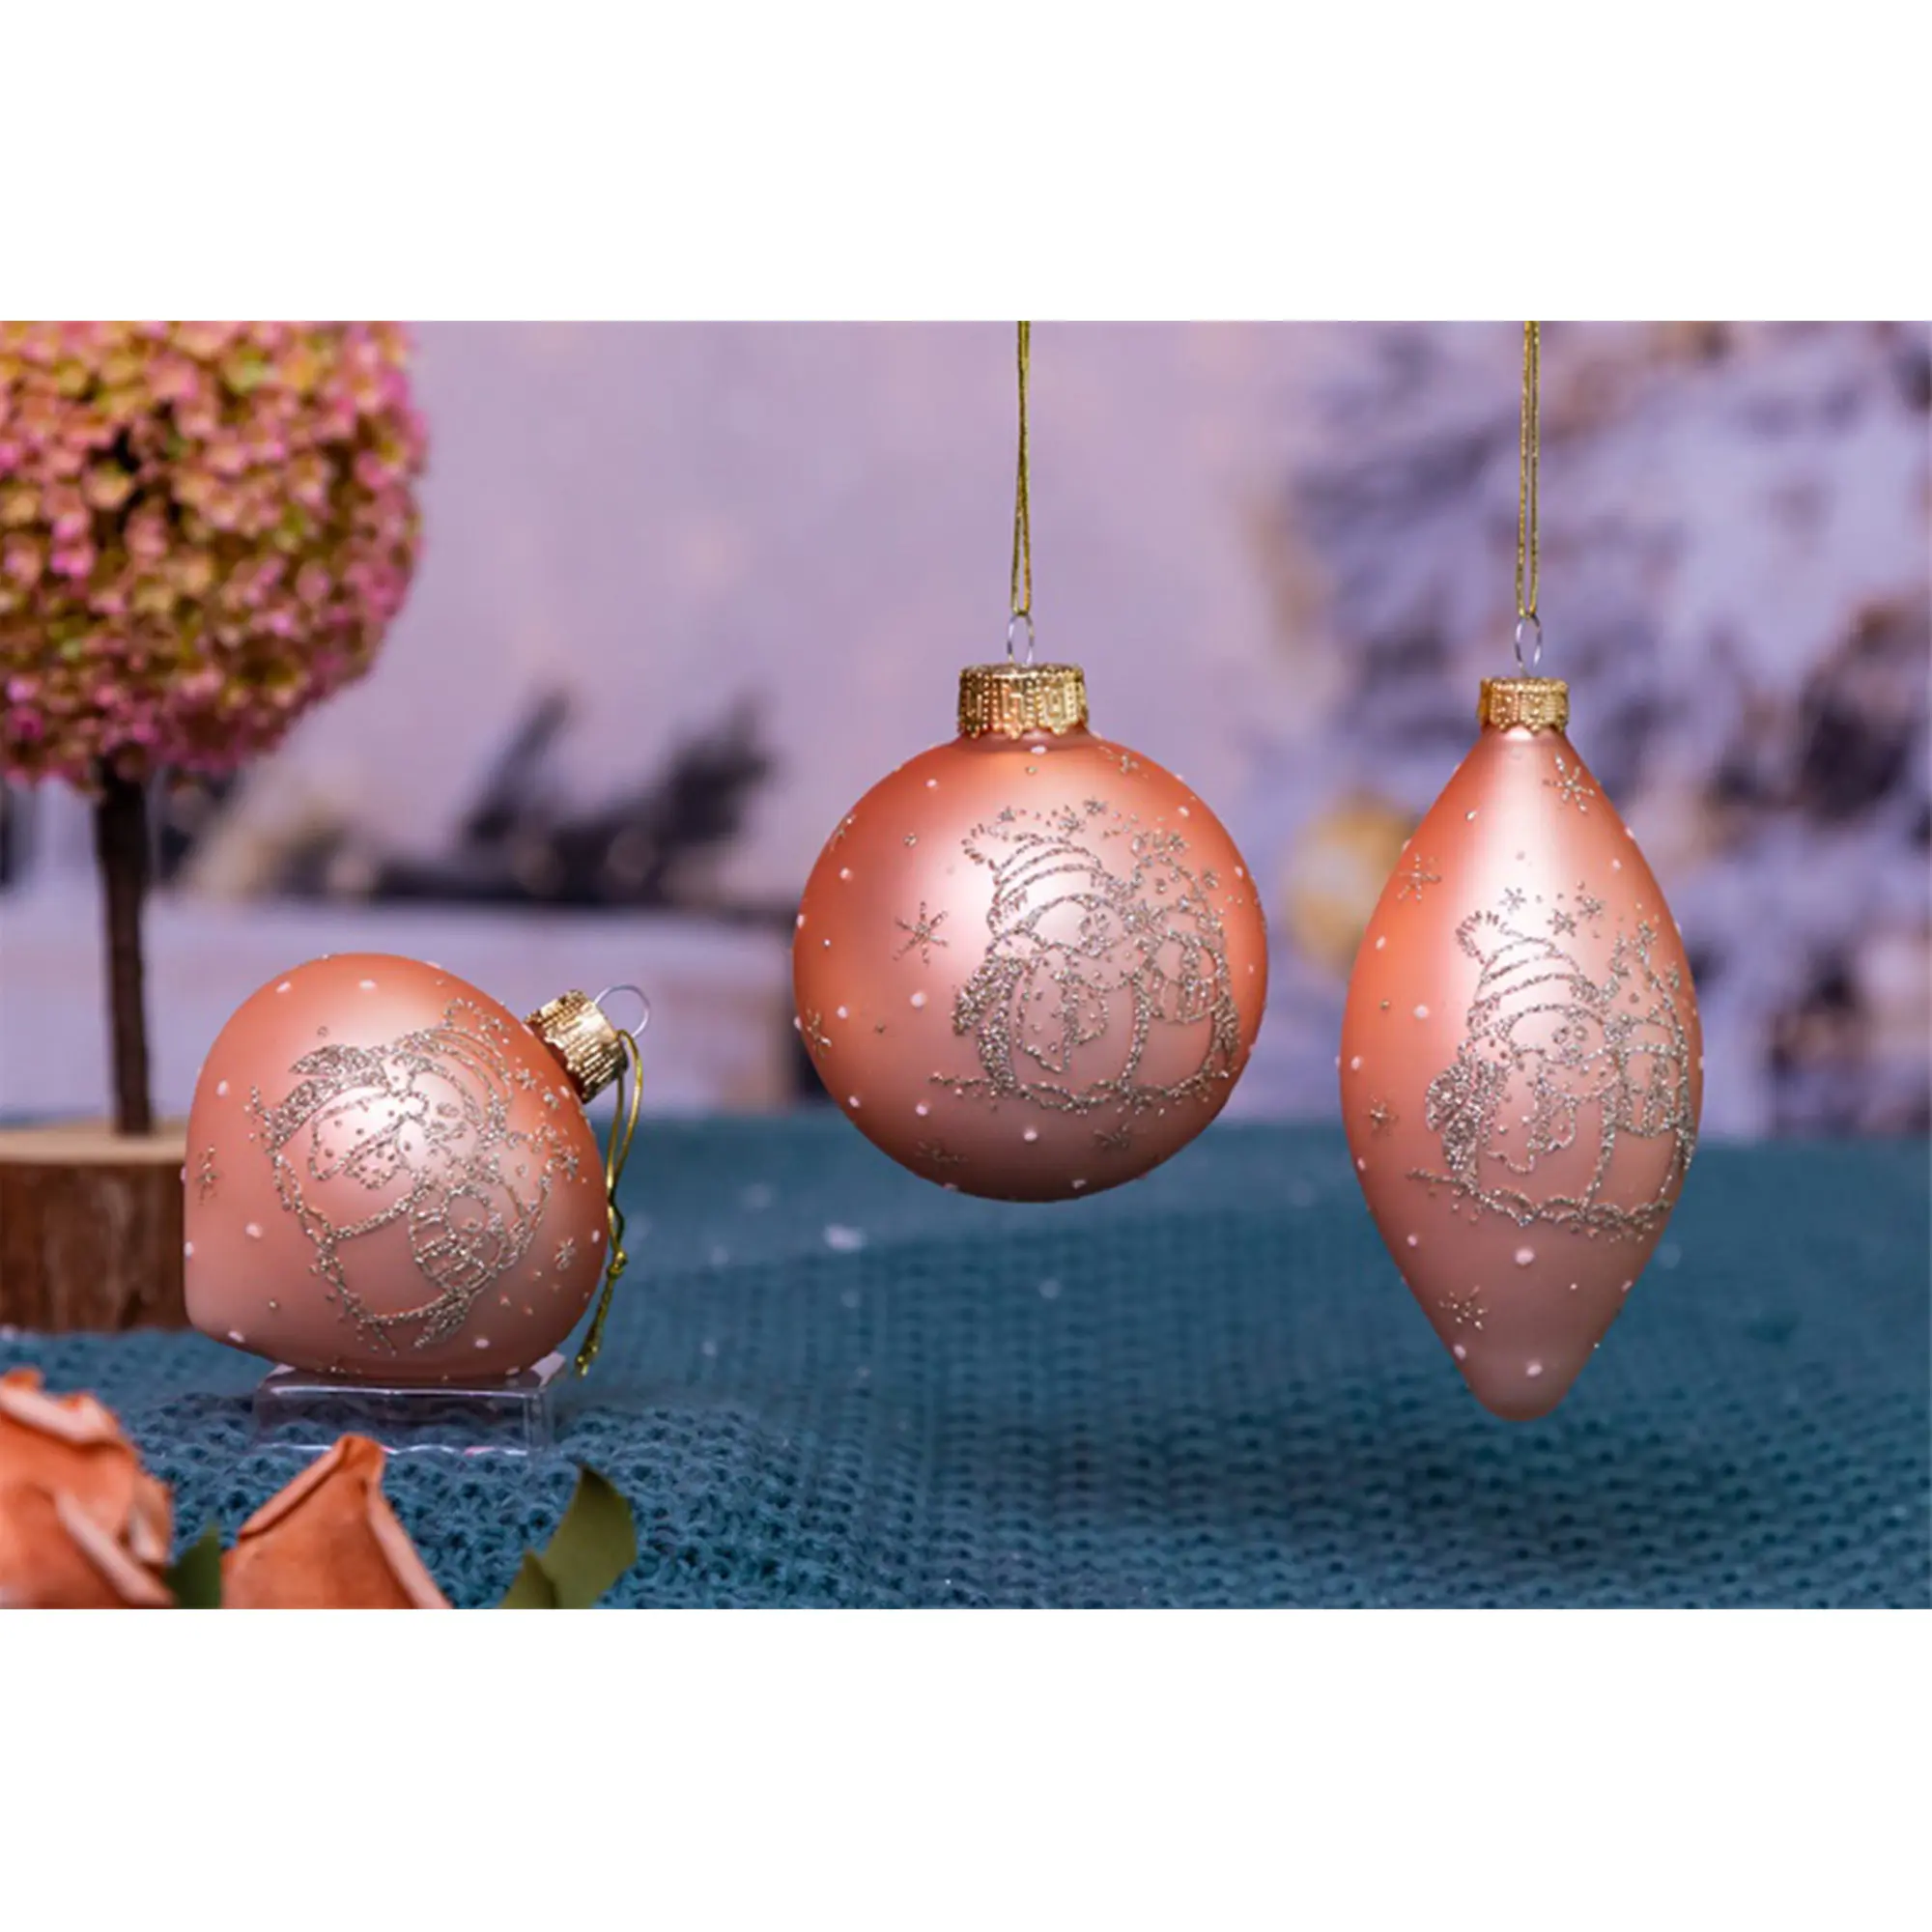 Taille personnalisée OEM verre d'oignon soufflé à la main boule personnalisée ornements de Noël couleur orange décoration ronde de l'arbre de Noël